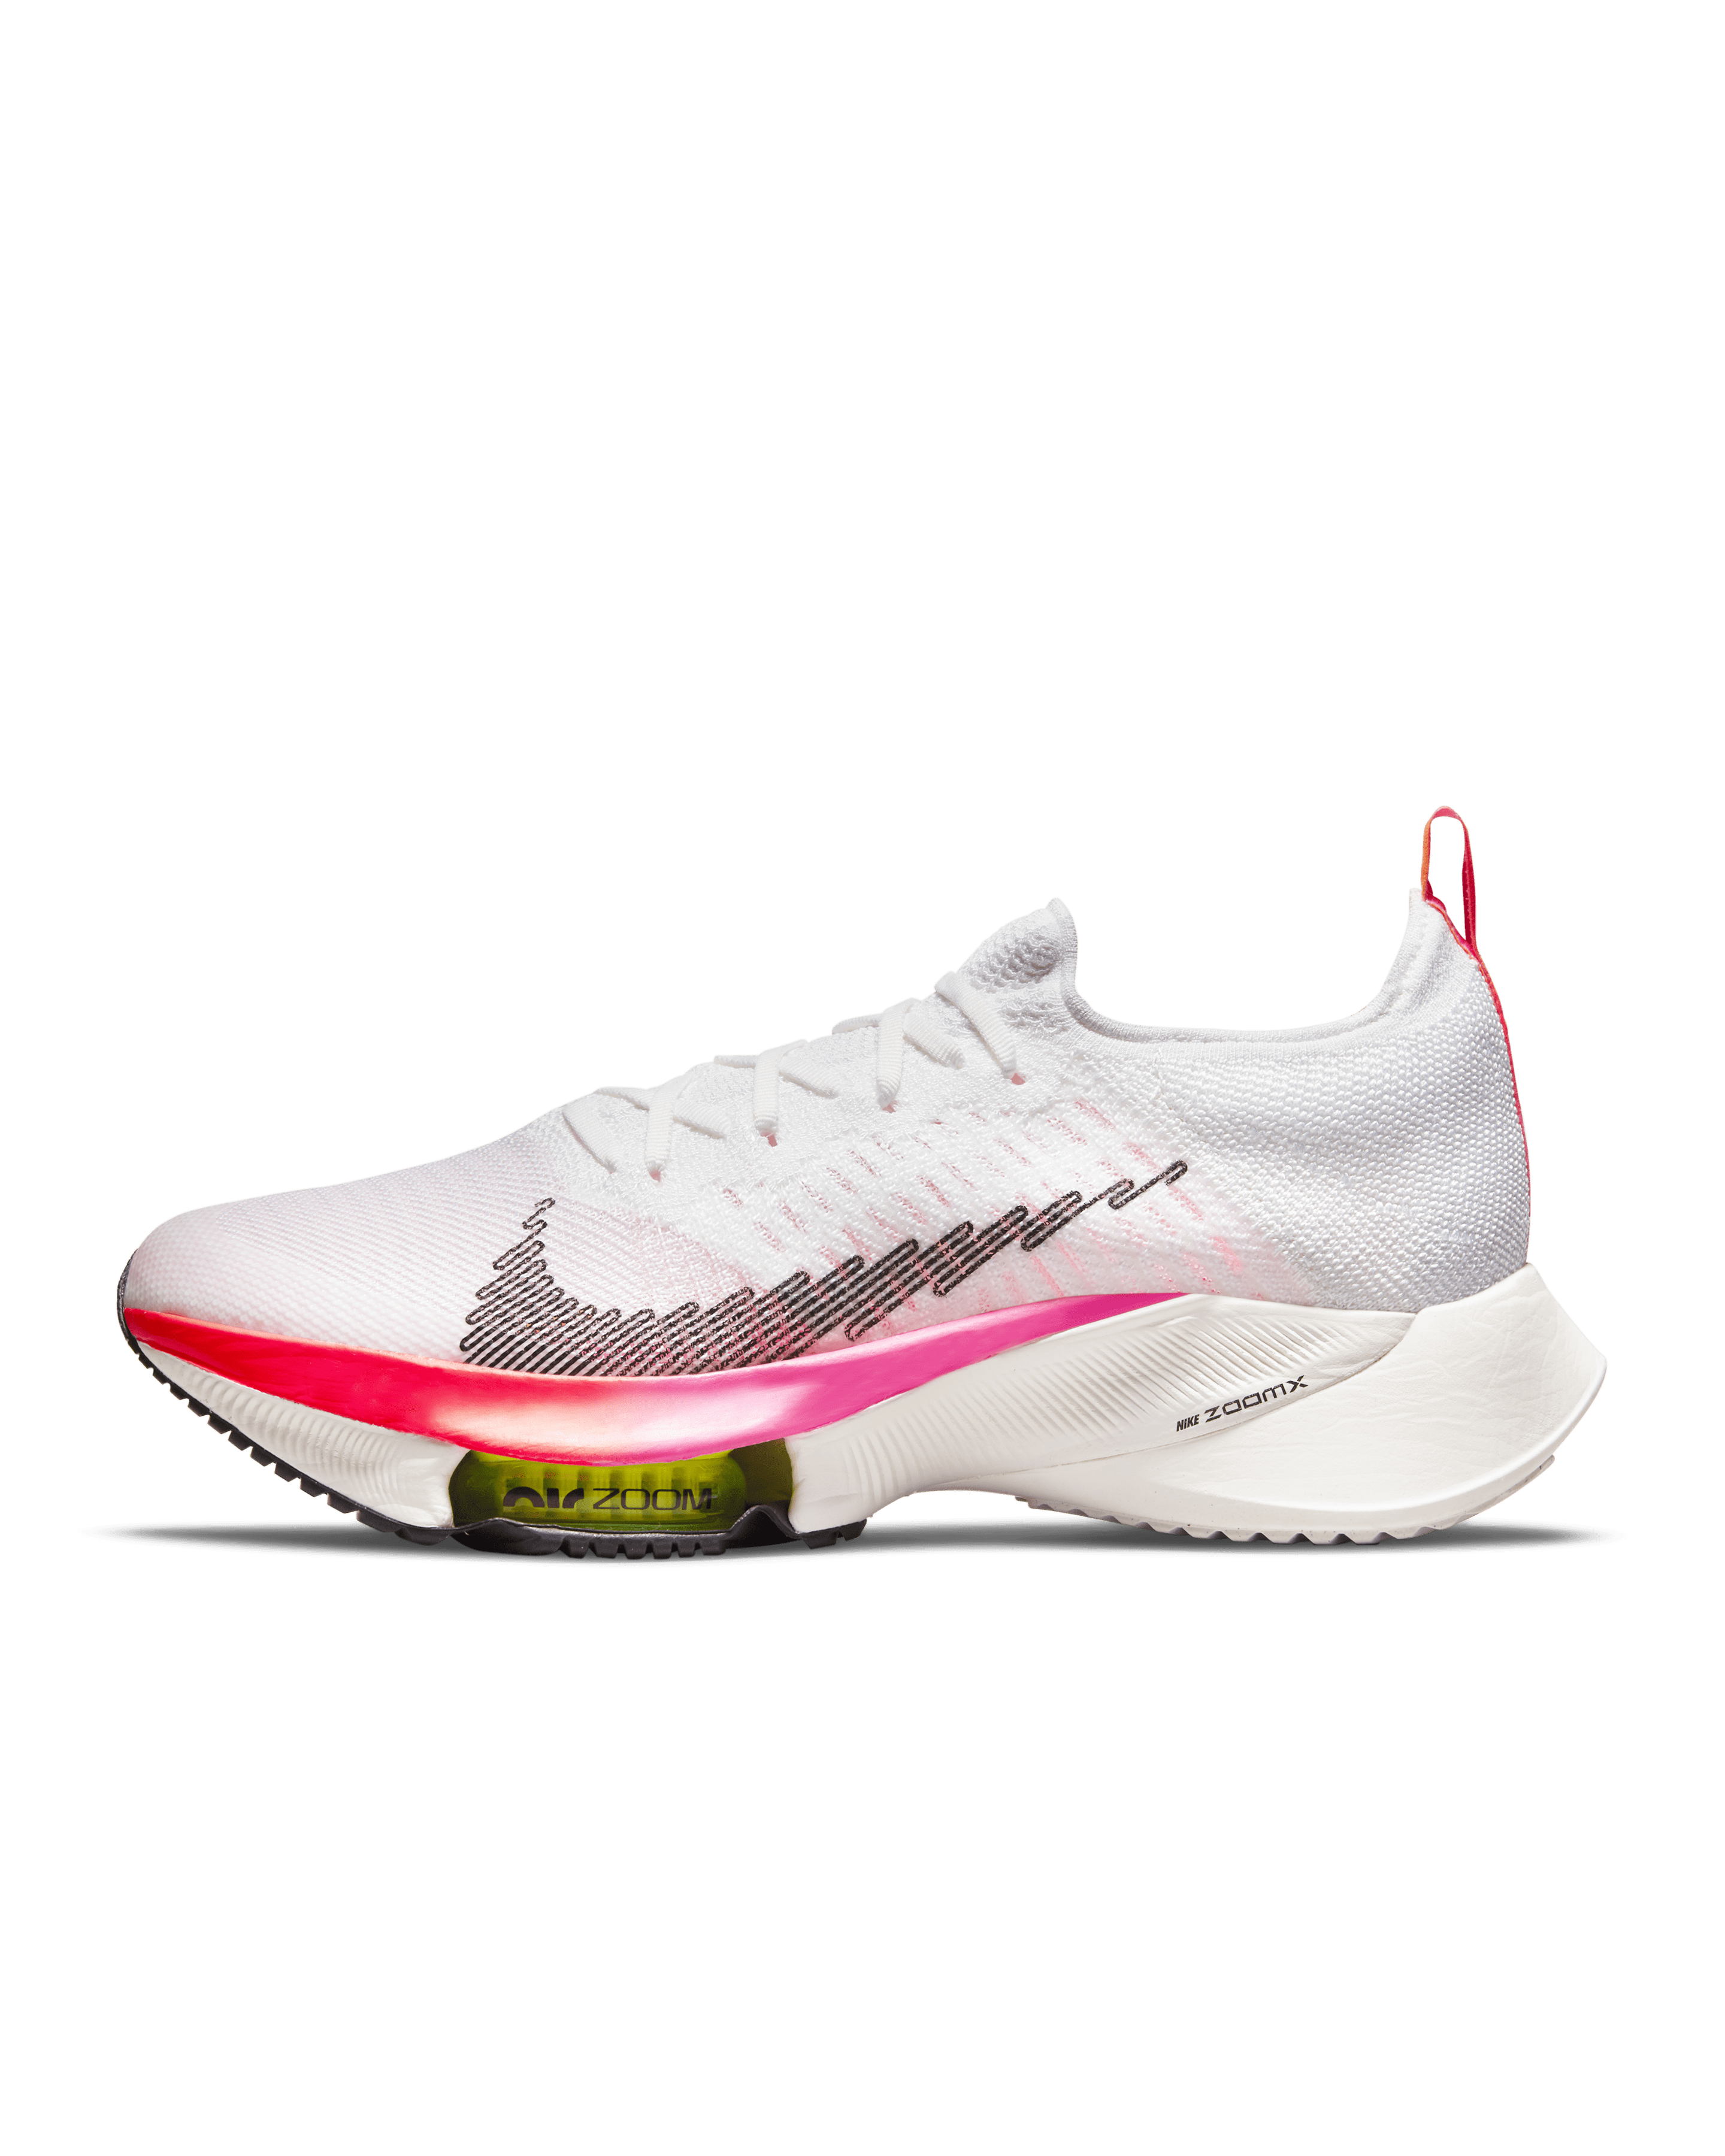 pueblo para agregar Stratford on Avon 10 Best Nike Running Shoes of 2022 - Running Shoe Reviews